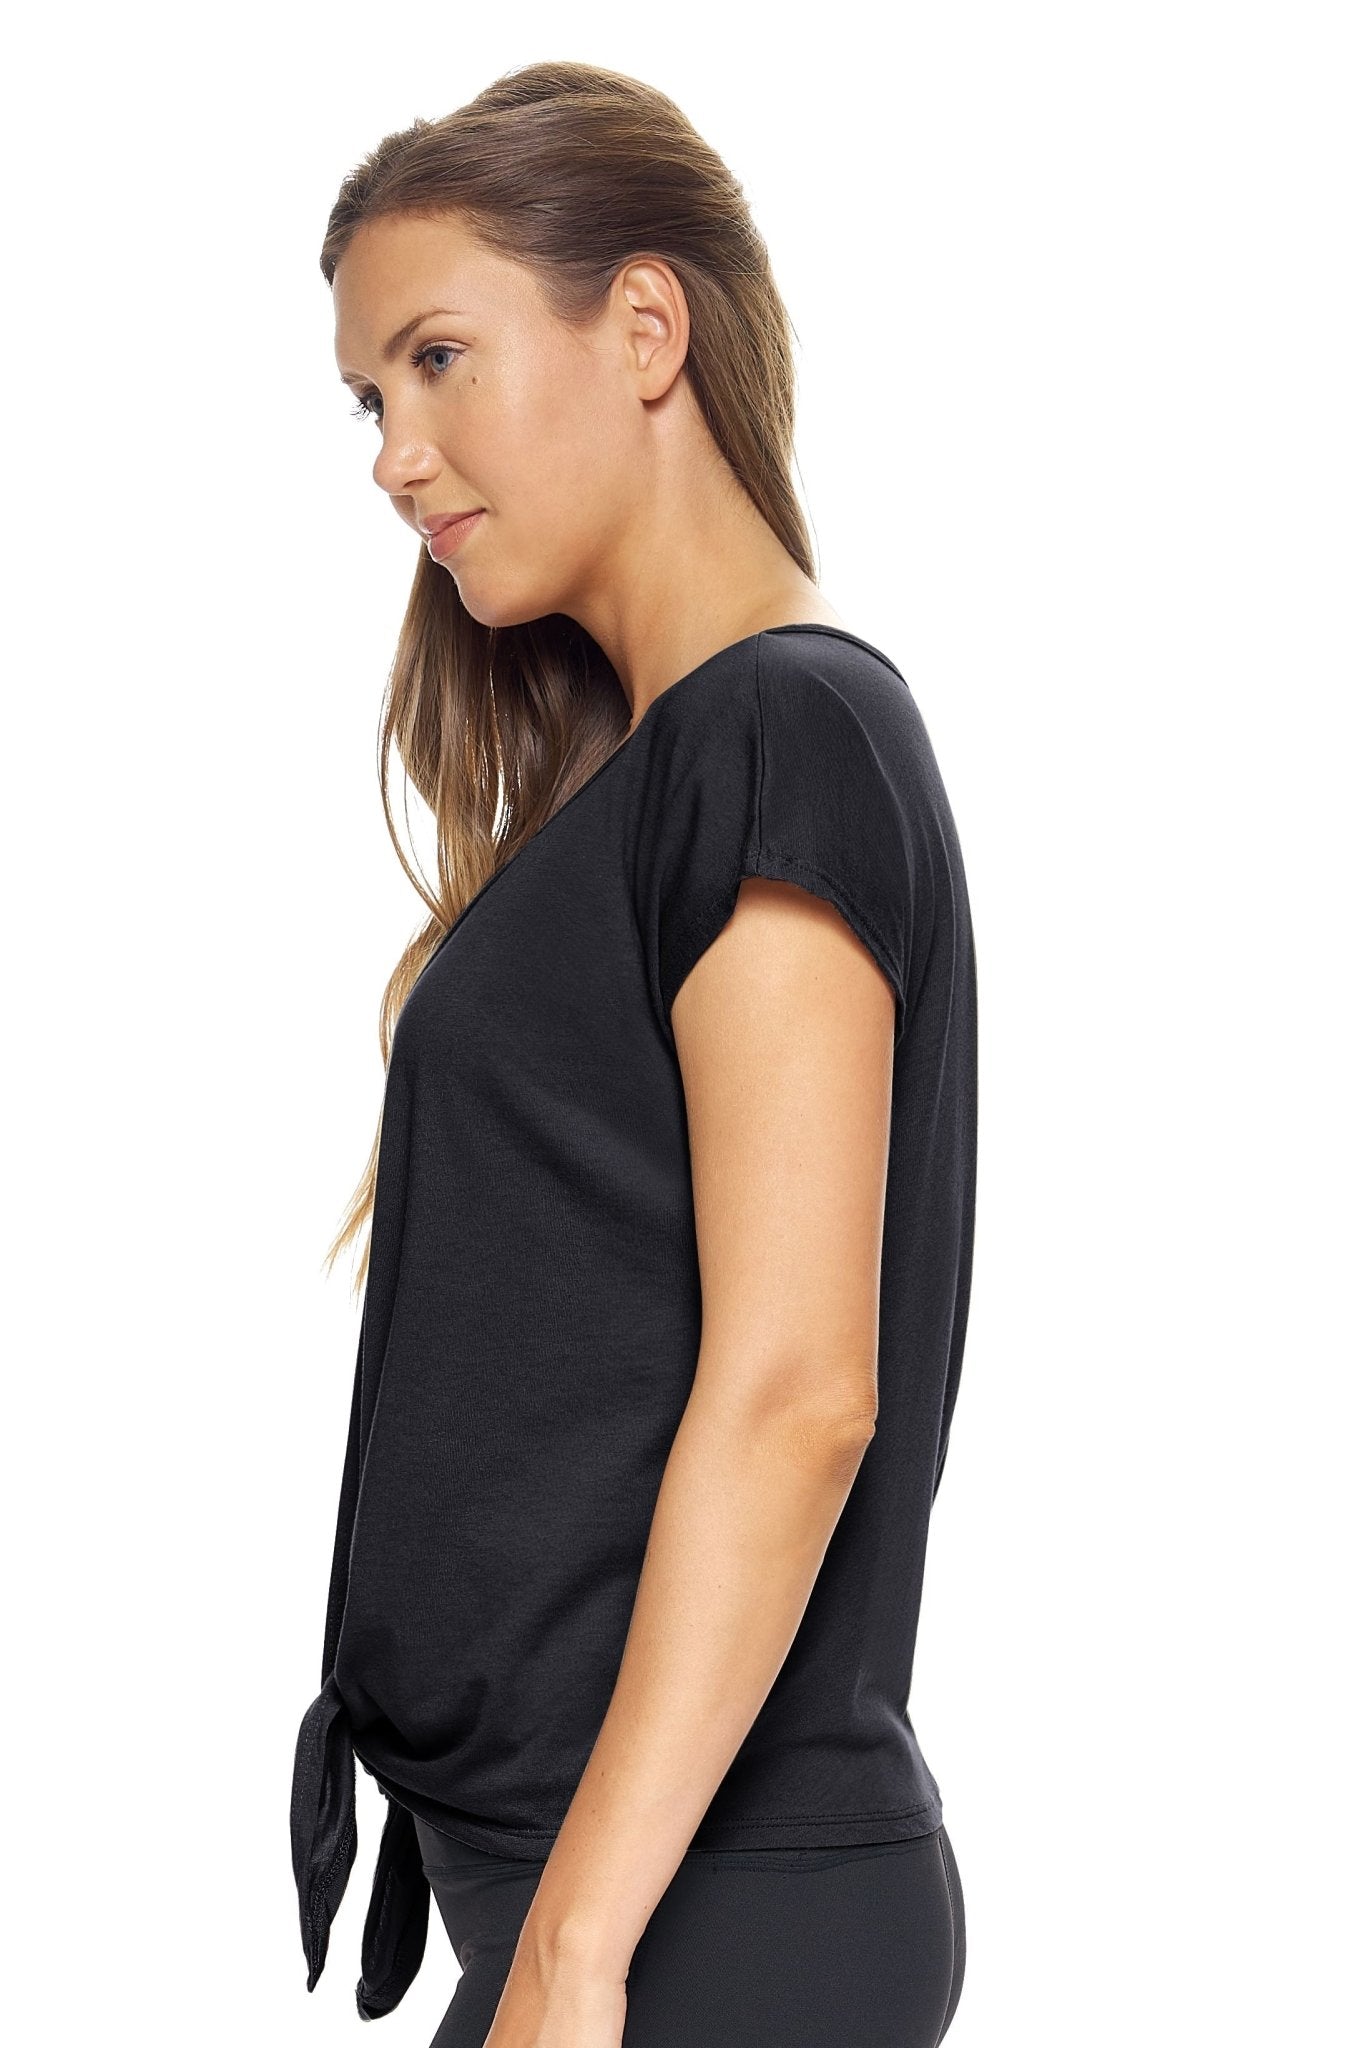 Expert Brand MoCA Plant Based Split Front Tie T-Shirt - DressbarnActivewear